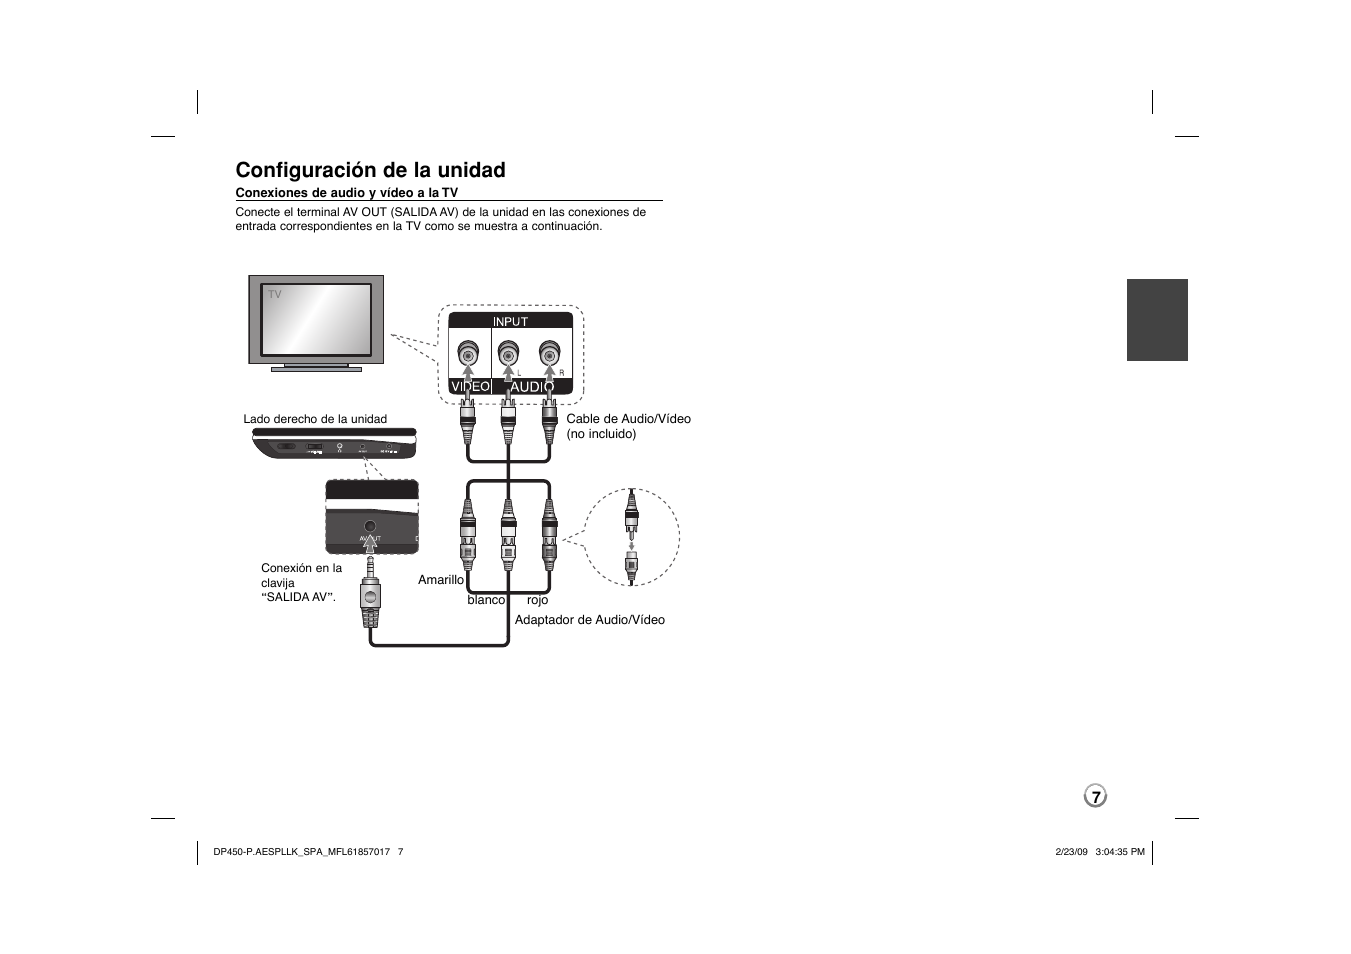 Configuración de la unidad | LG DP450 User Manual | Page 21 / 70